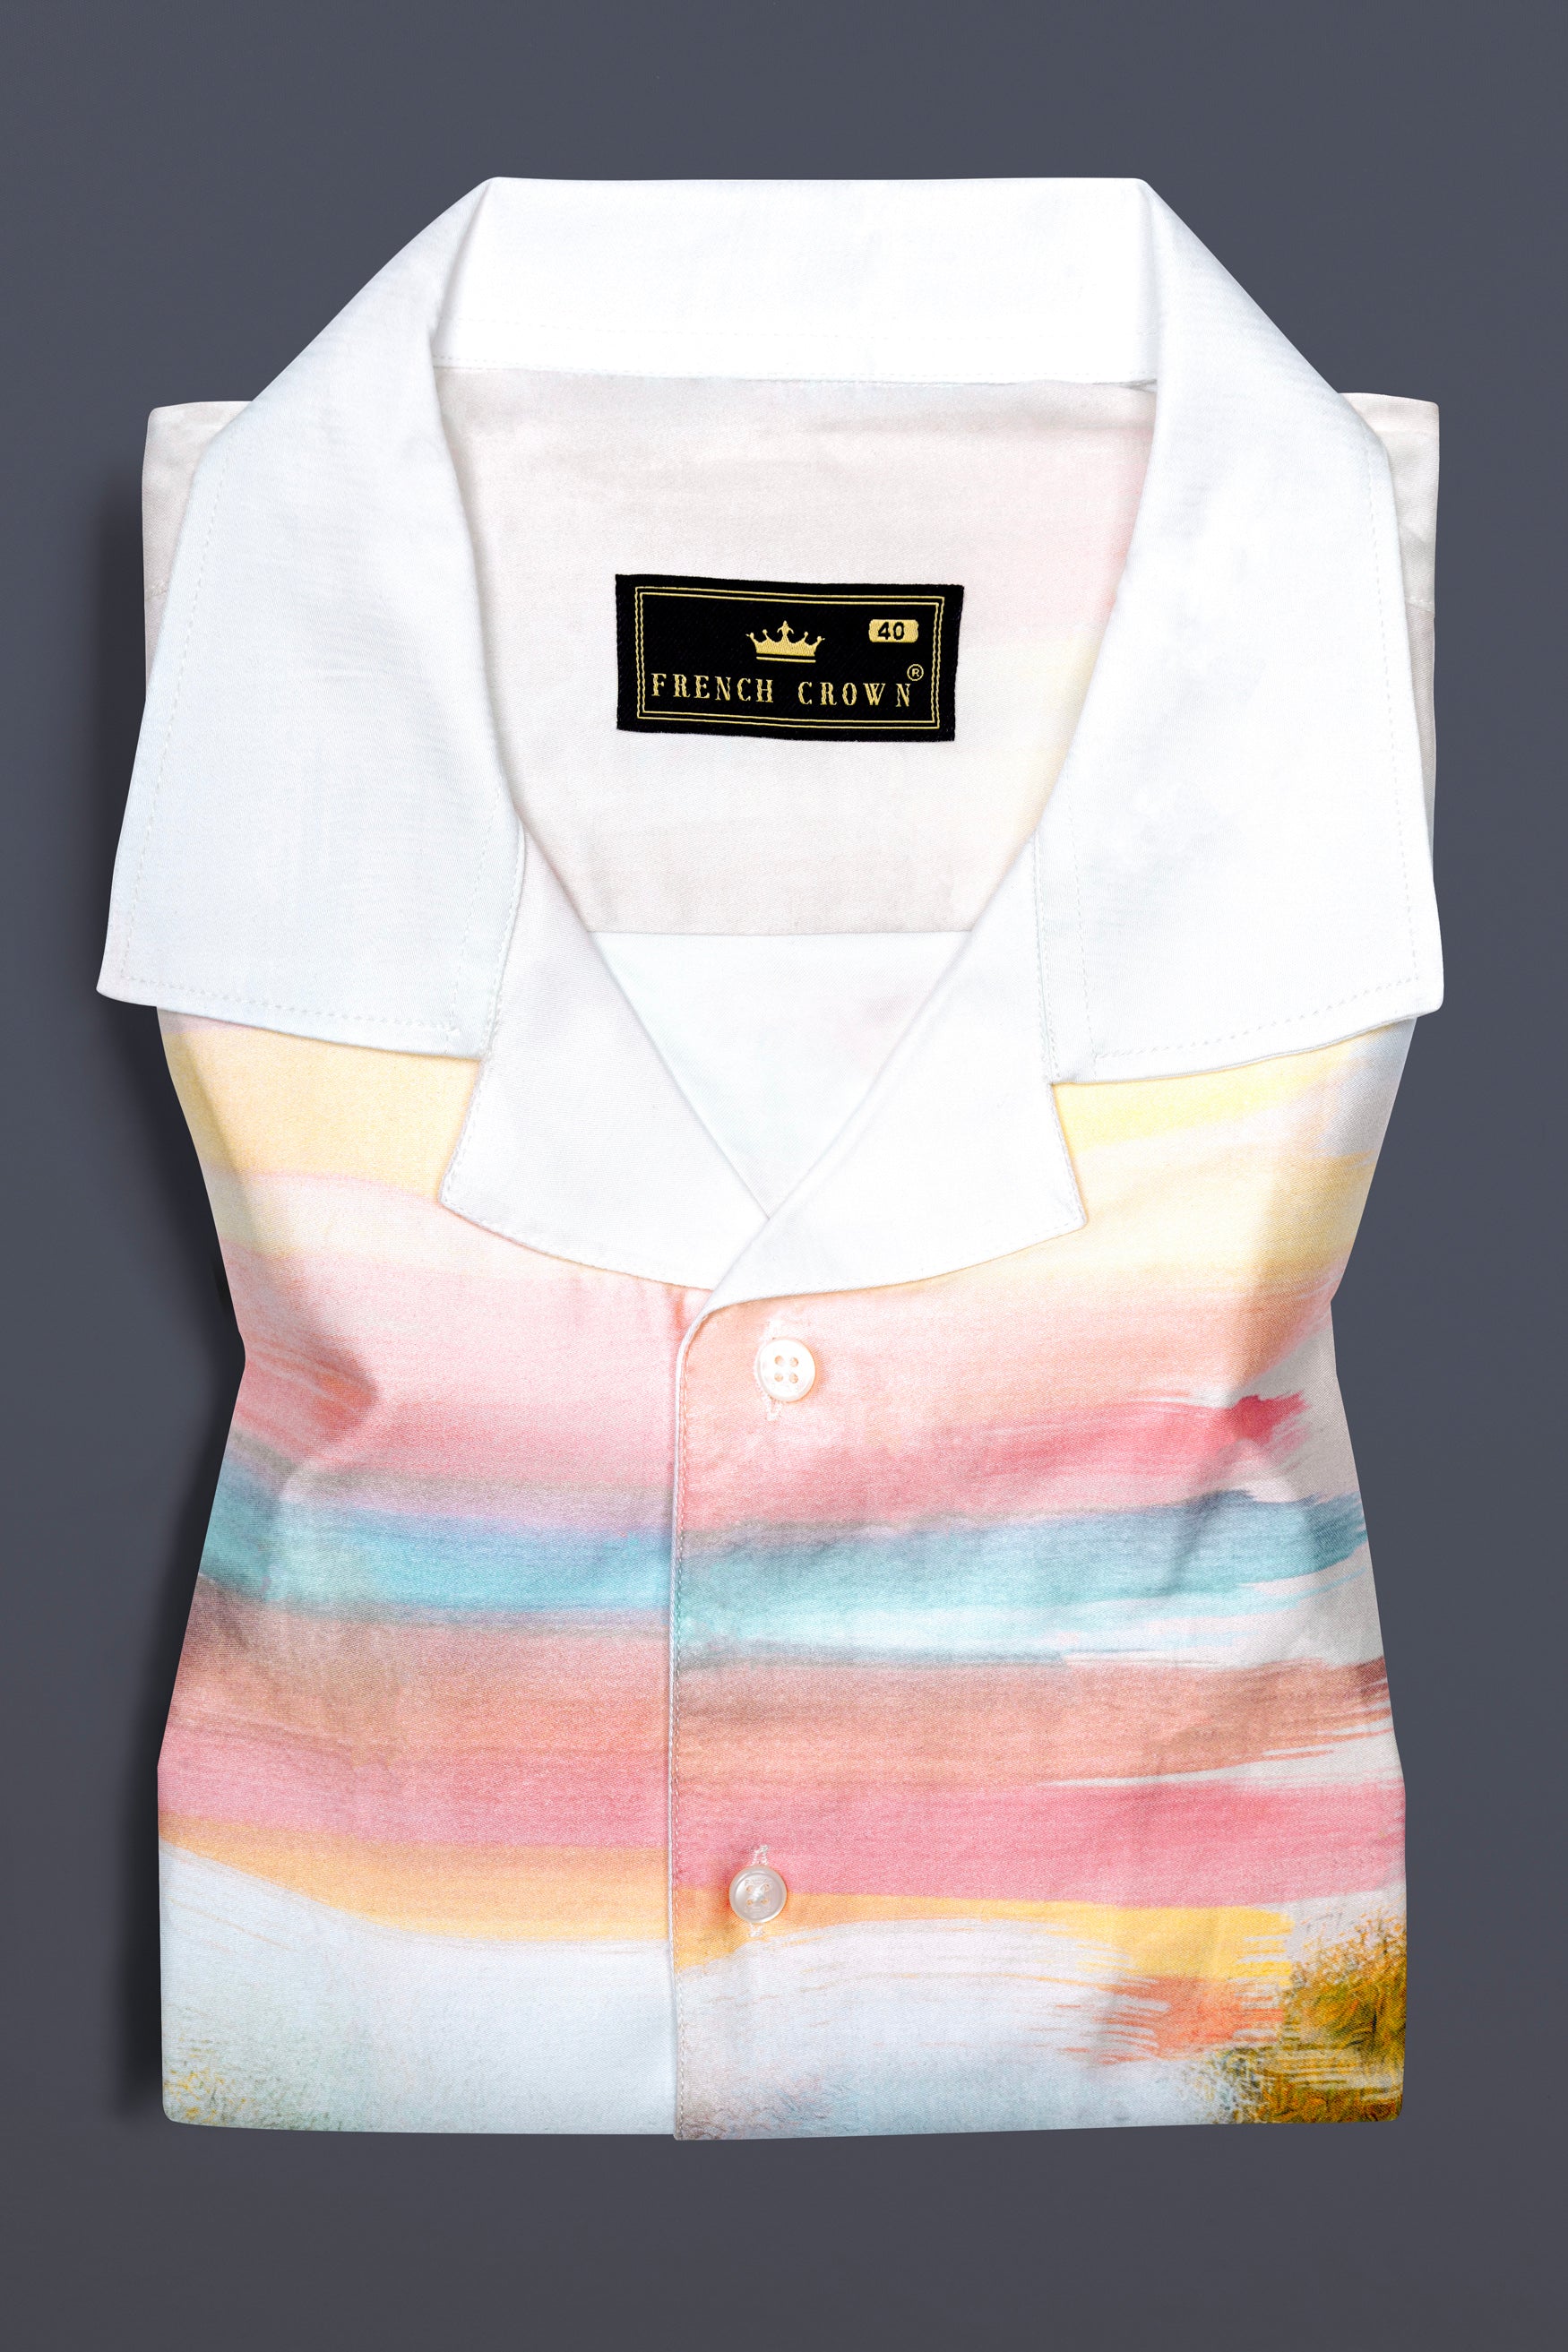 Bright White Digital Printed Super Soft Premium Cotton Shirt